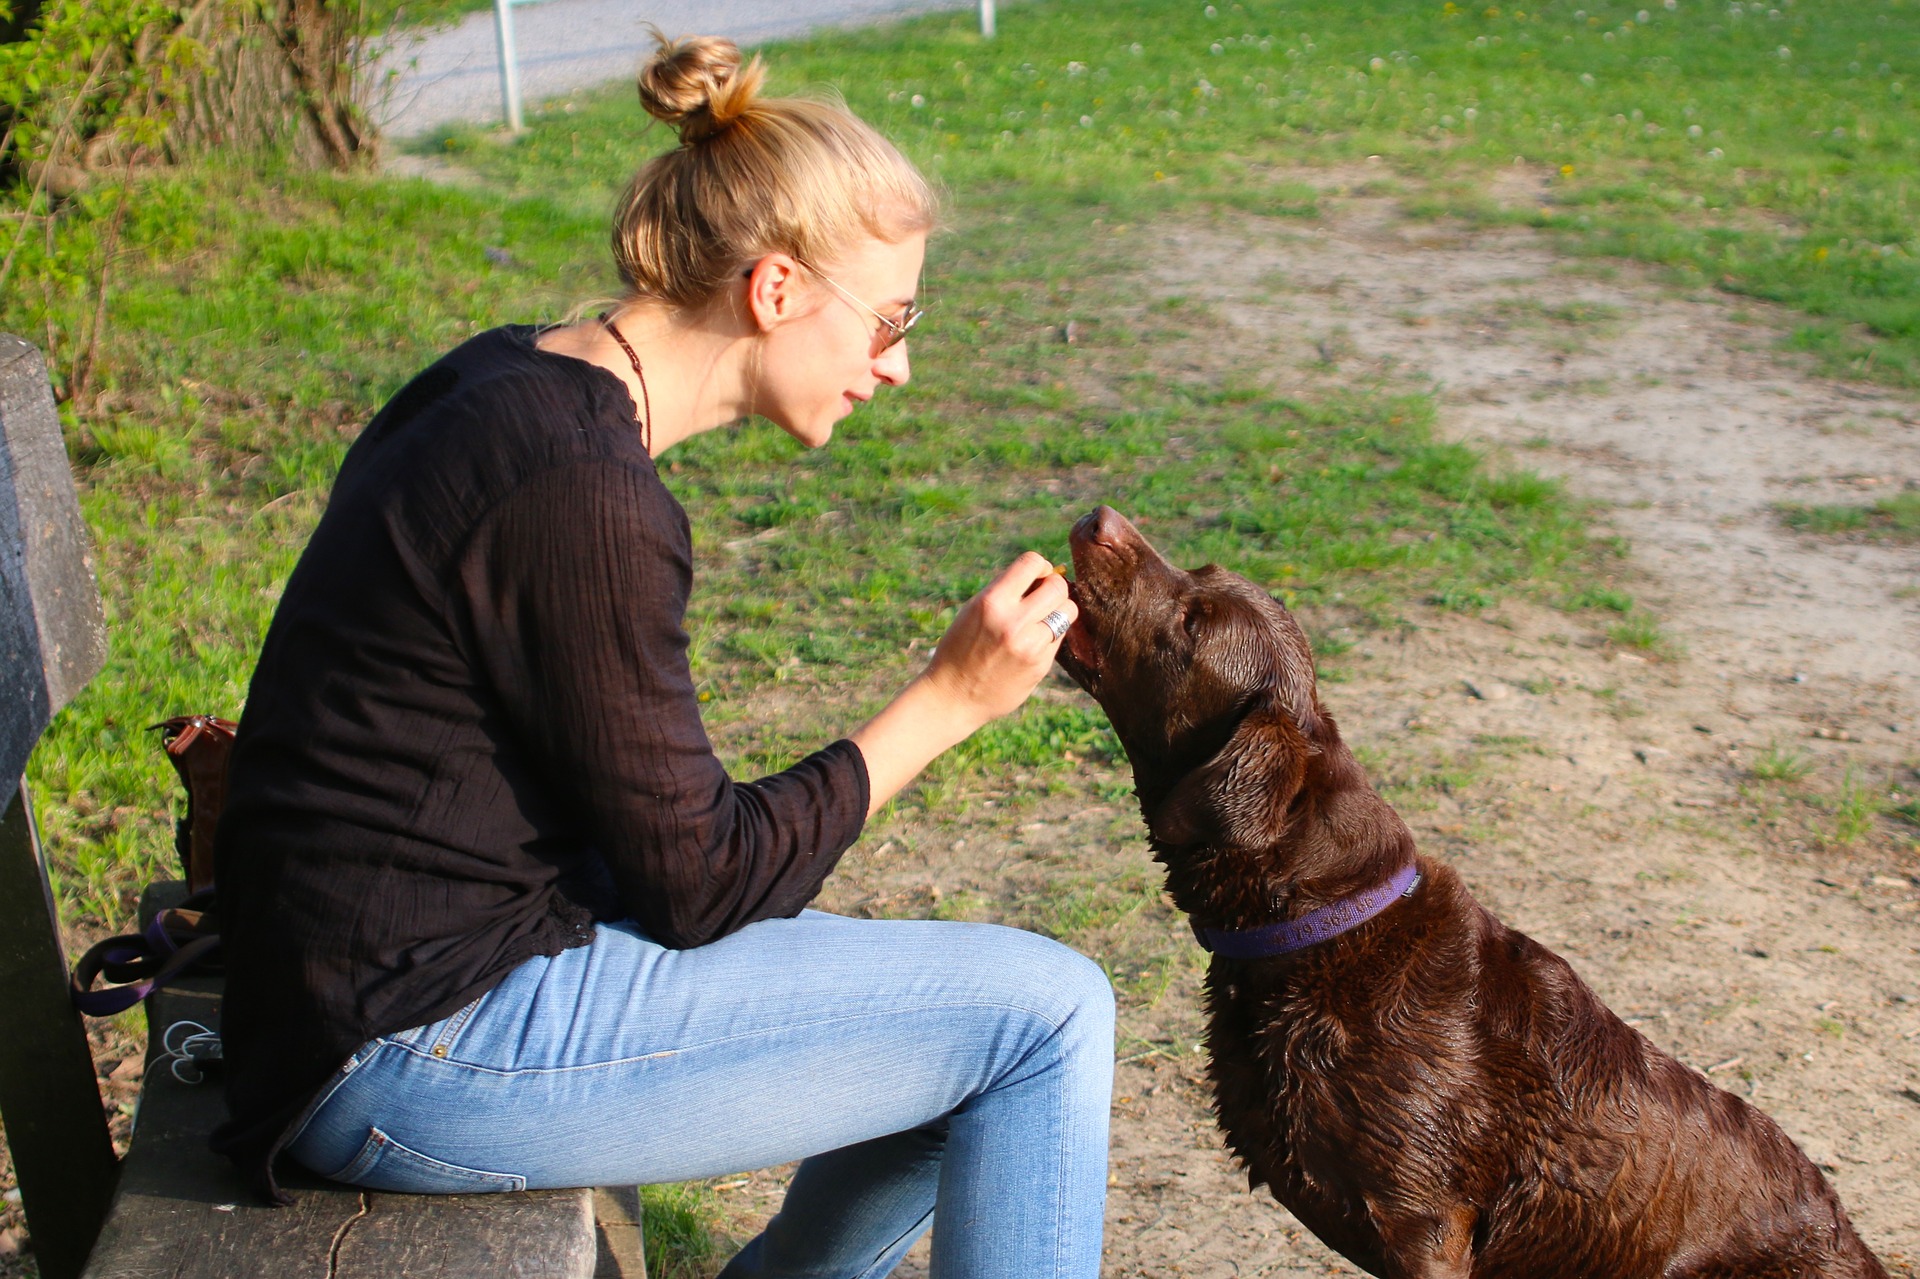 Züchter und Trainer betonen, dass bei der Aufzucht von Hunden die positive Motivation und Belohnung eines Haustieres der Schlüssel ist. Die Verwendung eines Halfters ist eine Form der Bestrafung und sollte in keiner Weise zu einer der Hauptmethoden des Trainings werden.